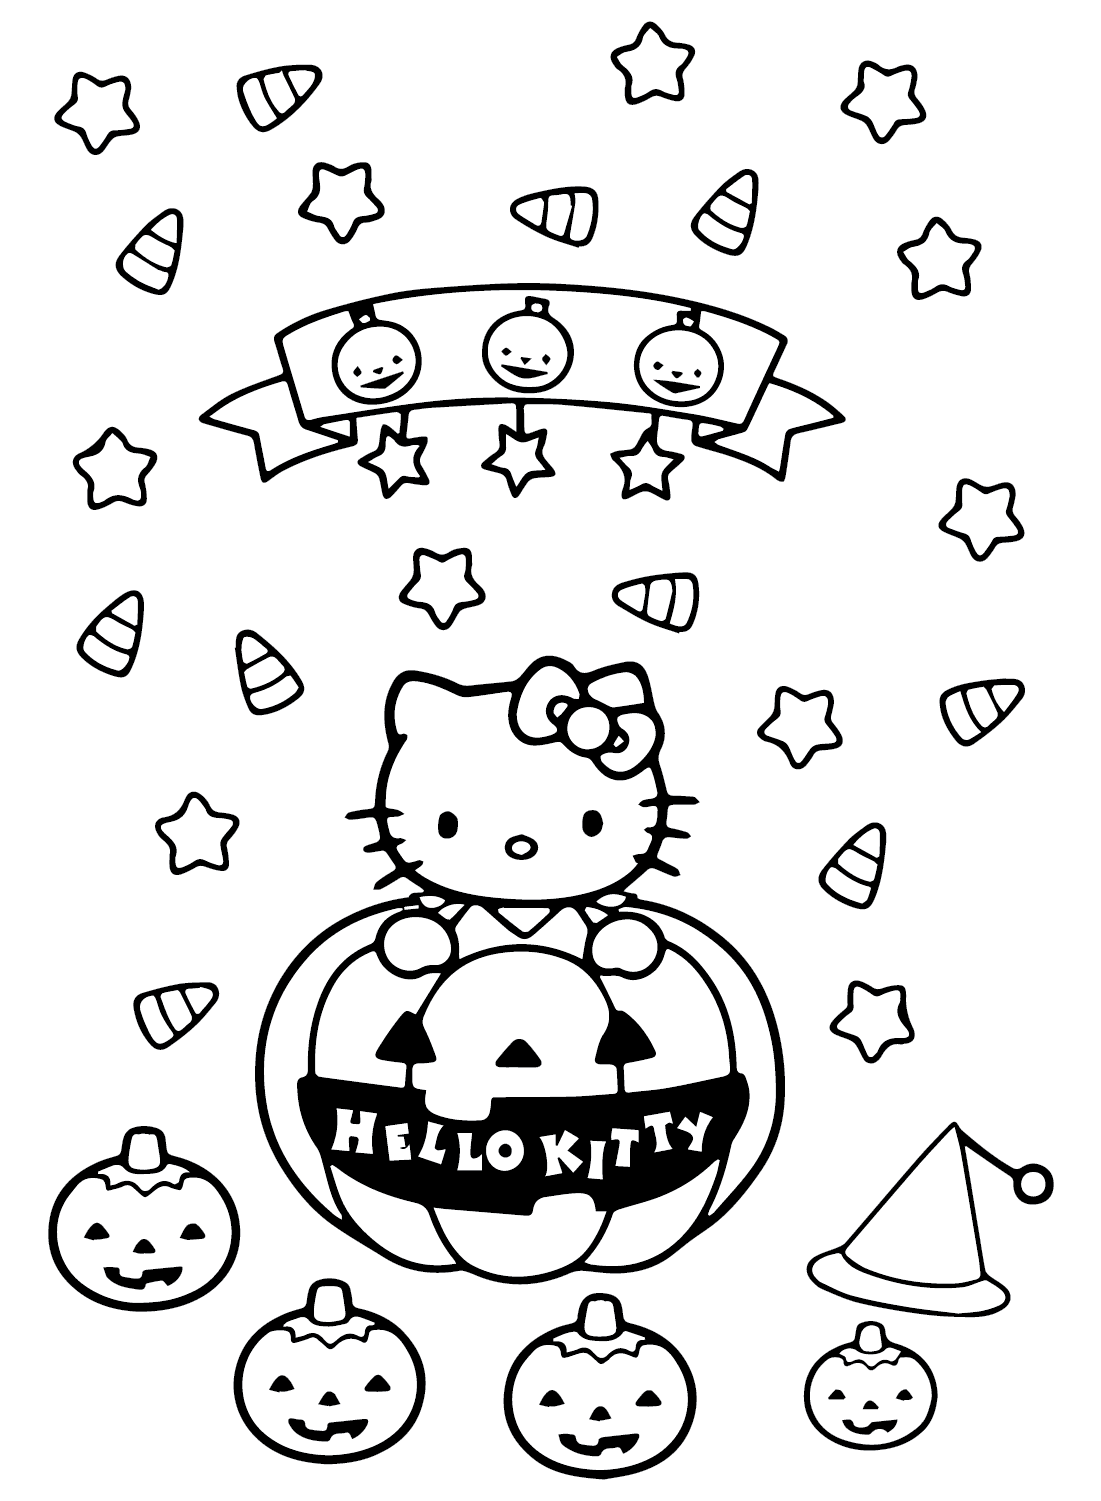 Páginas para colorear gratis para Halloween Hello Kitty imprimibles de Halloween Hello Kitty